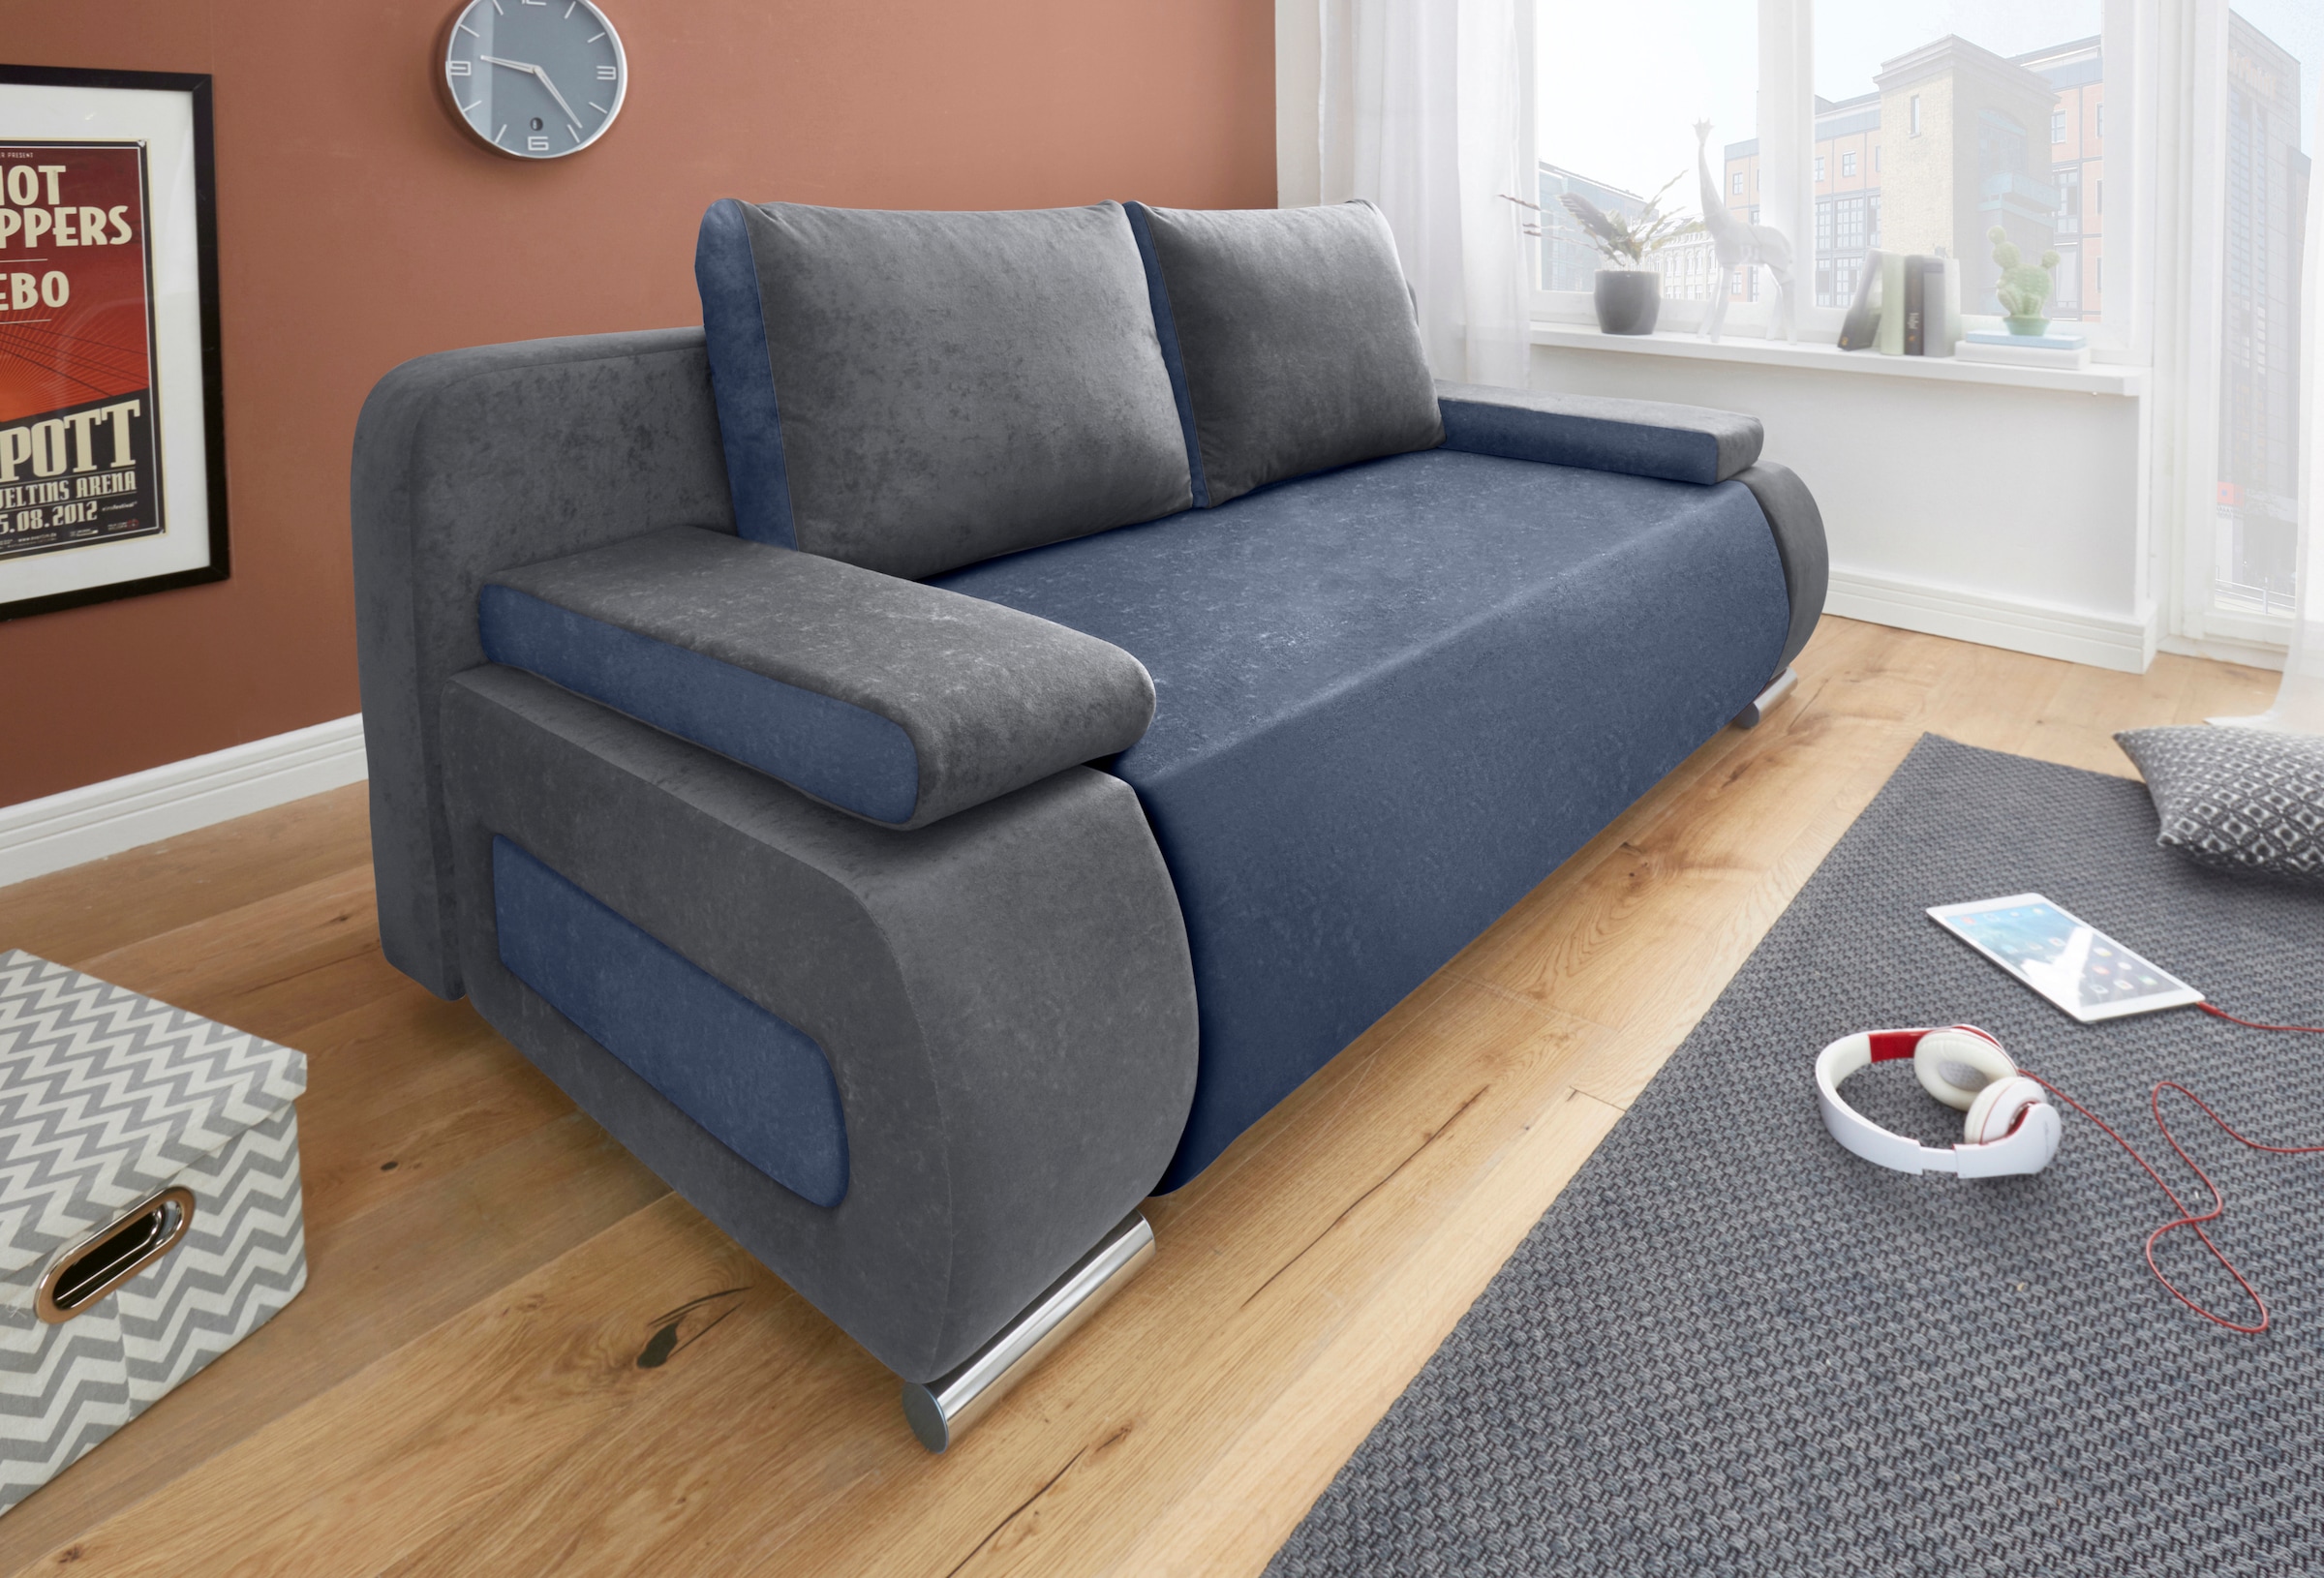 Shop kaufen günstig Couch Sofa Online & im